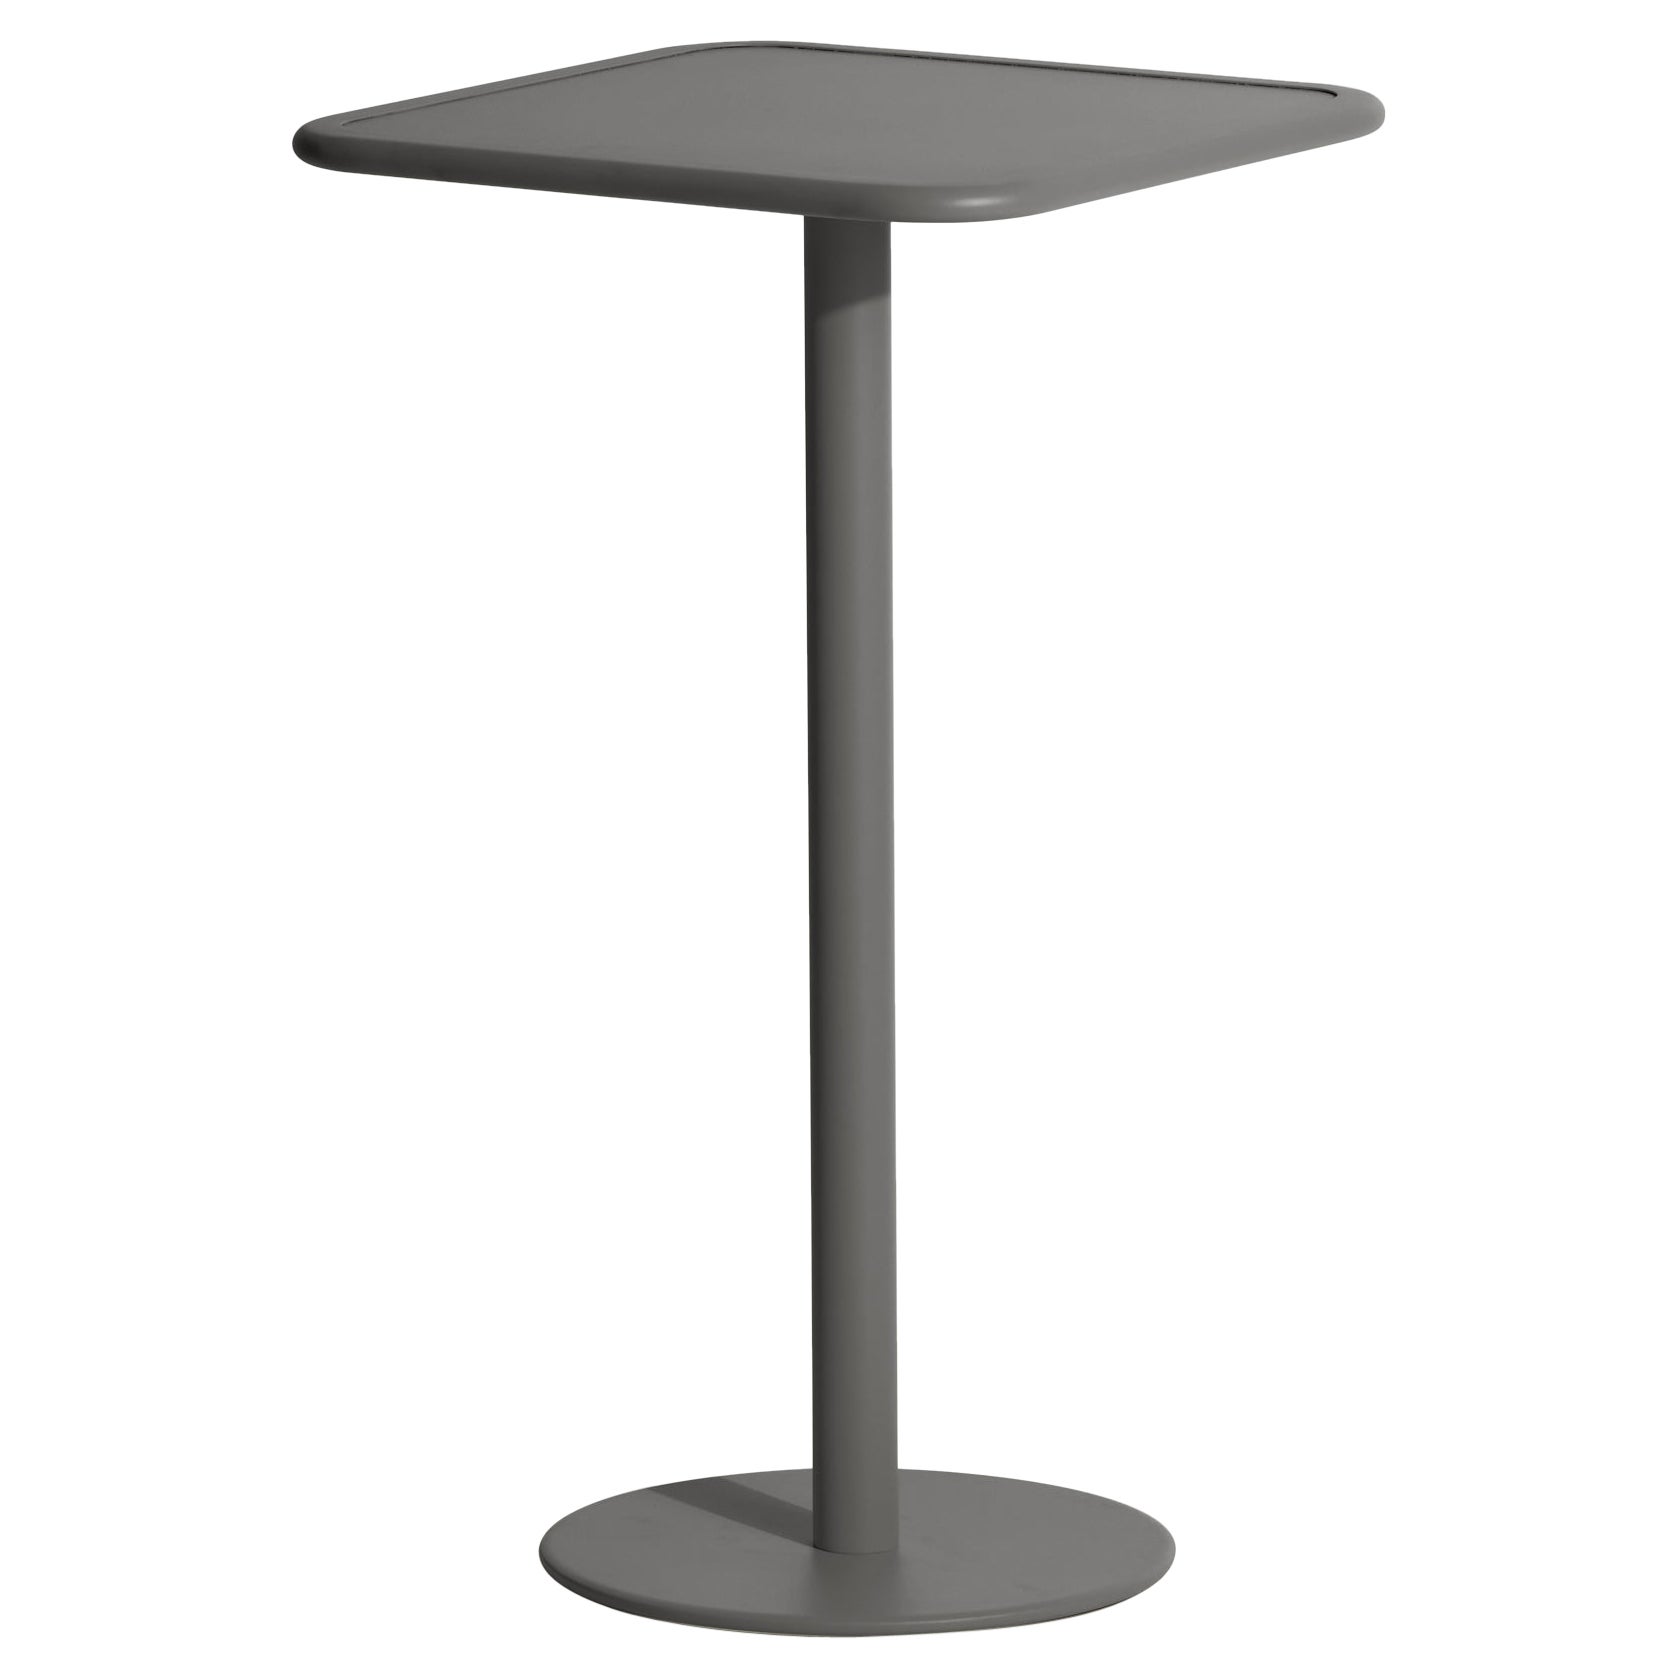 Petite table haute carrée de la semaine en aluminium anthracite, 2017